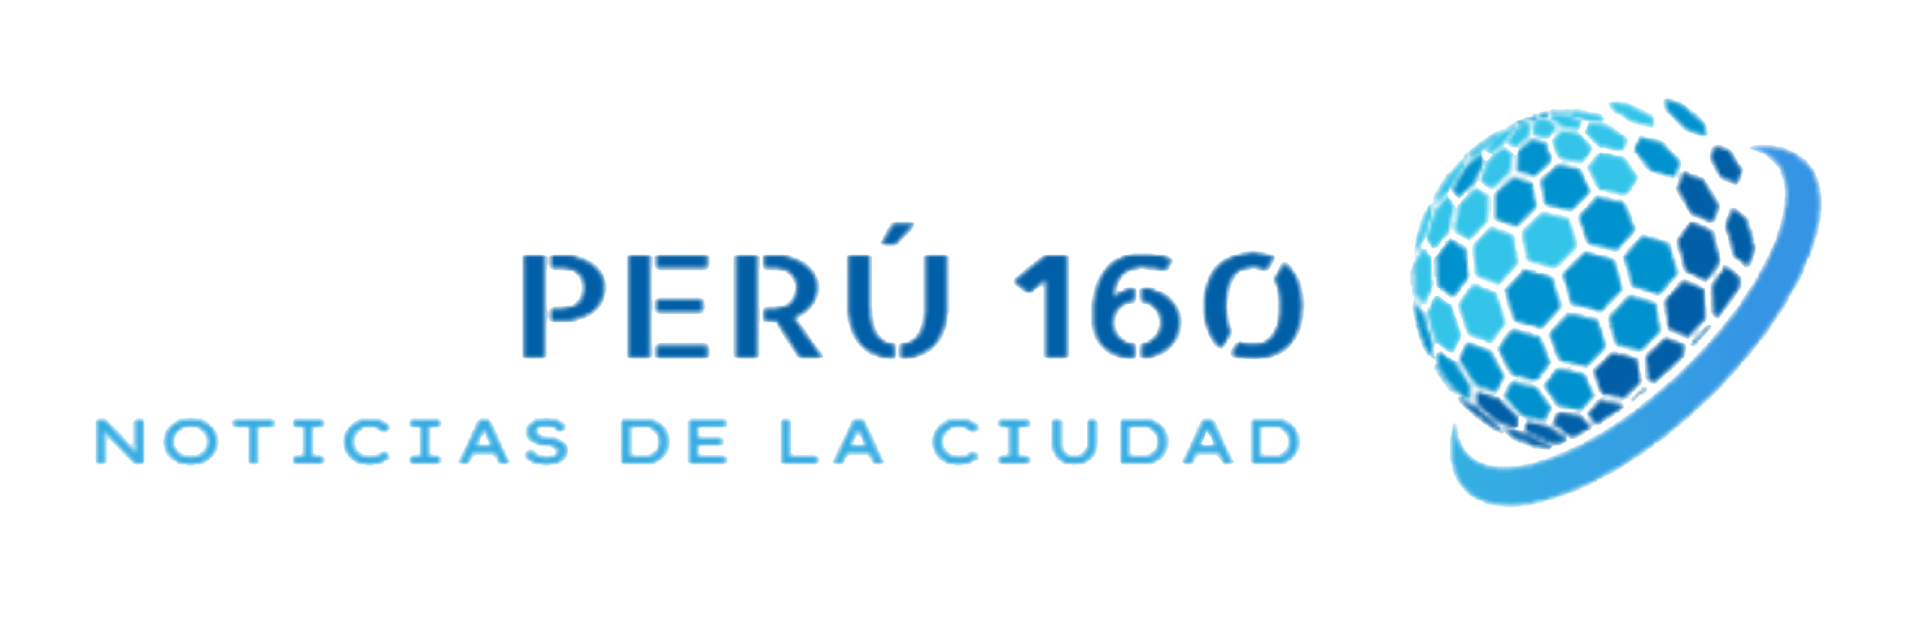 Peru160